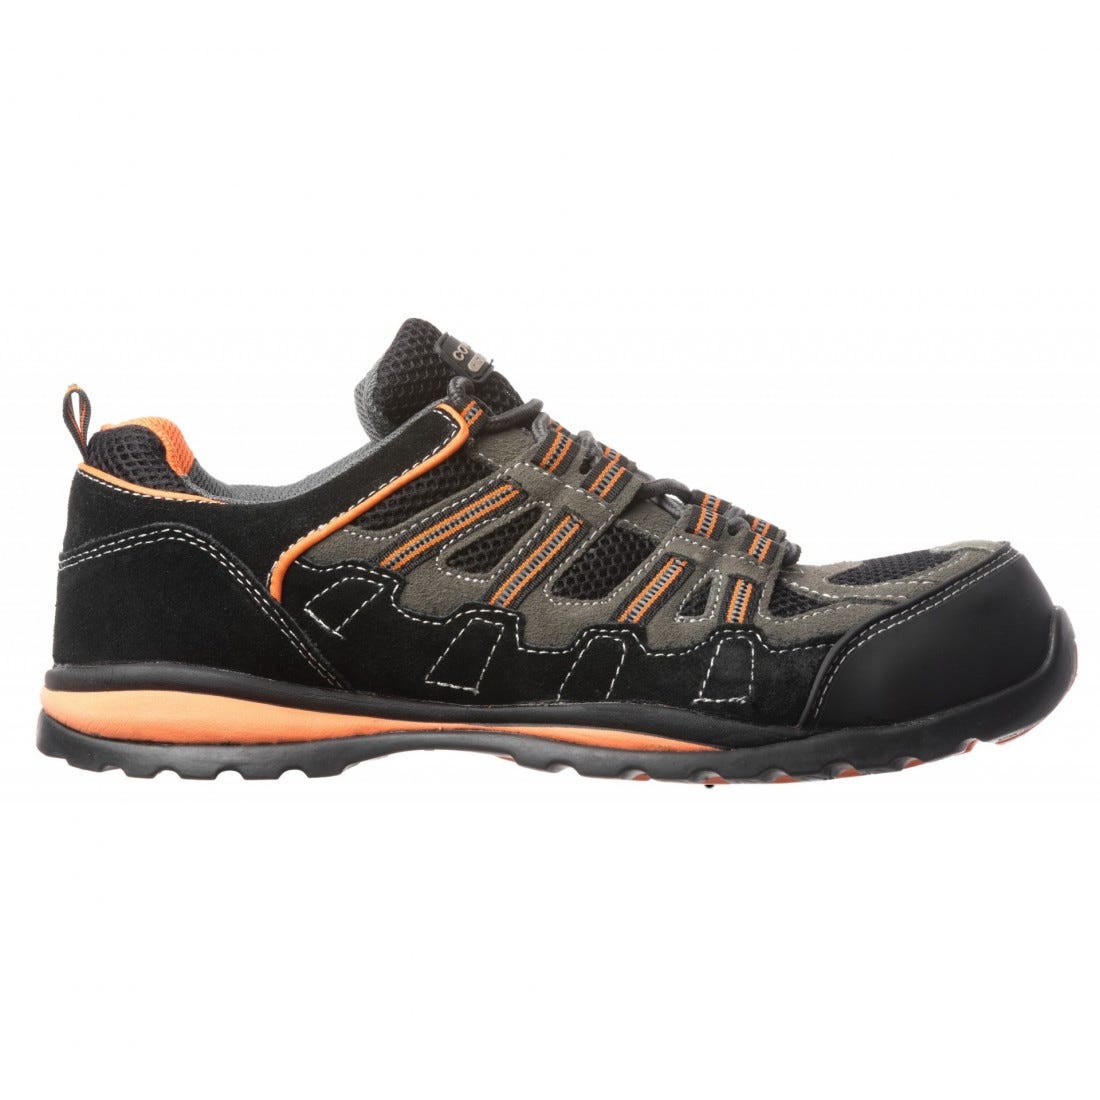 Chaussures de sécurité HELVITE S1P composite noir/orange - COVERGUARD - Taille 41 1